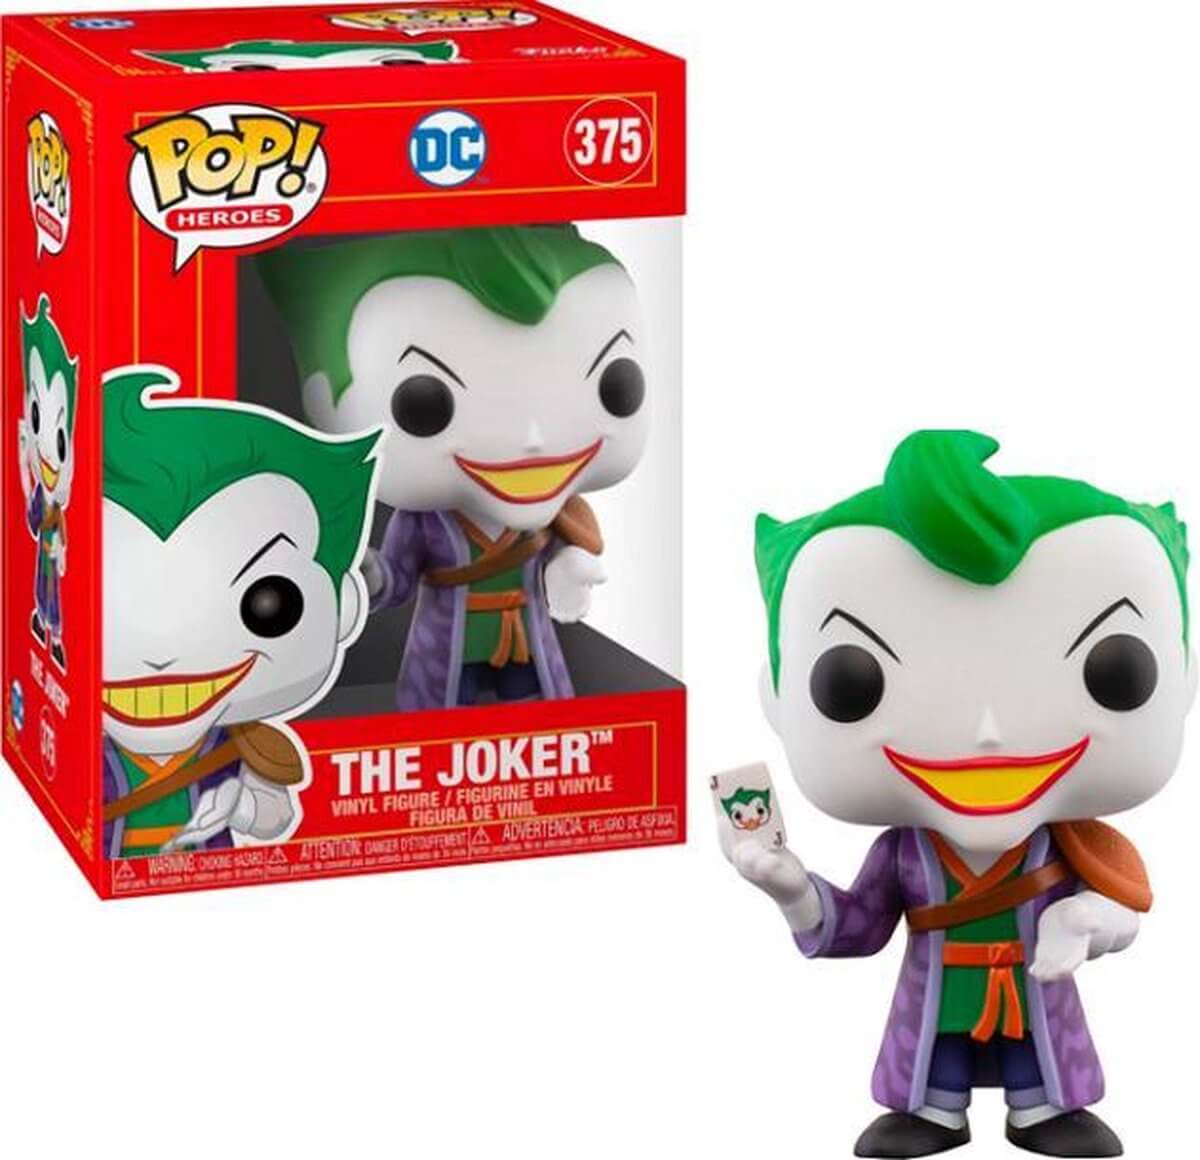 Wil jij een Funko Pop Funko POP! Heroes Imperial Palace The Joker kopen? Wij hebben een groot assortiment aan Funko Pop producten! Betaal gelijk of achteraf.